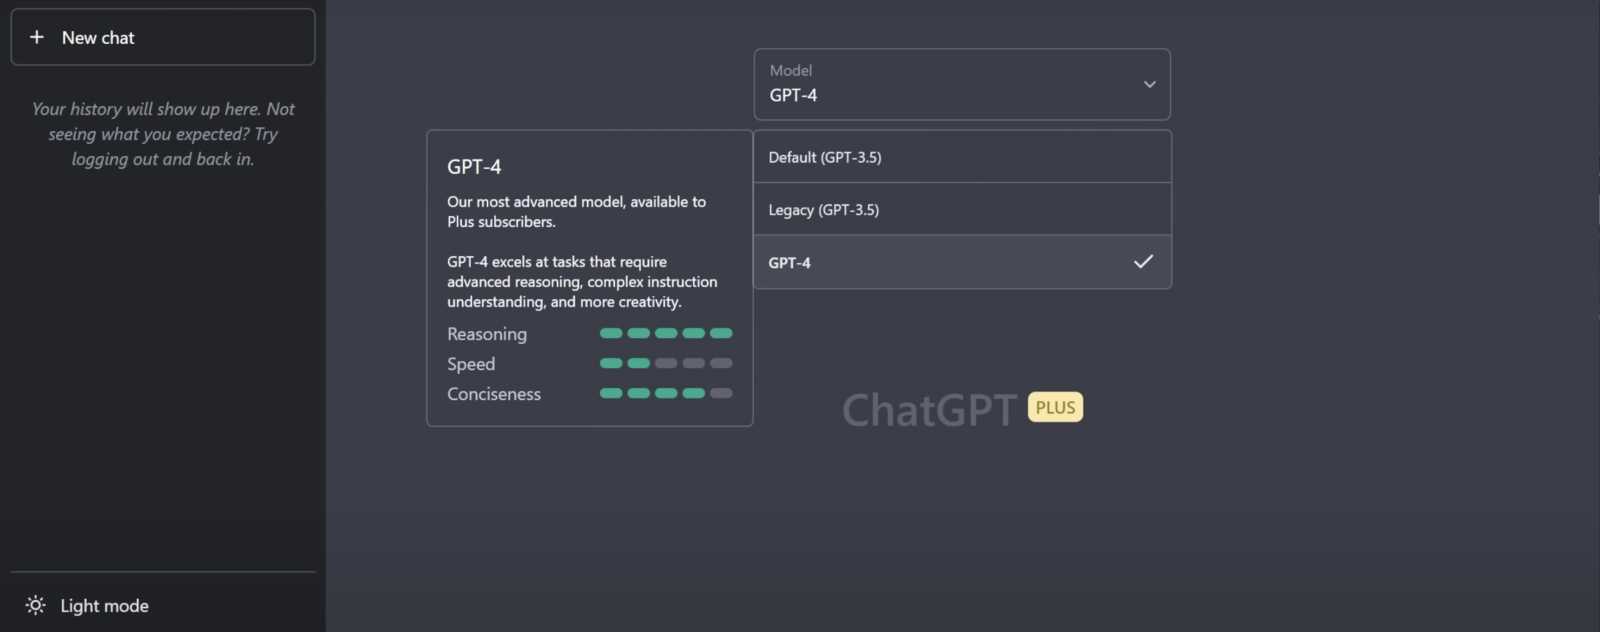 Comment utiliser le modèle GPT4 sur ChatGPT